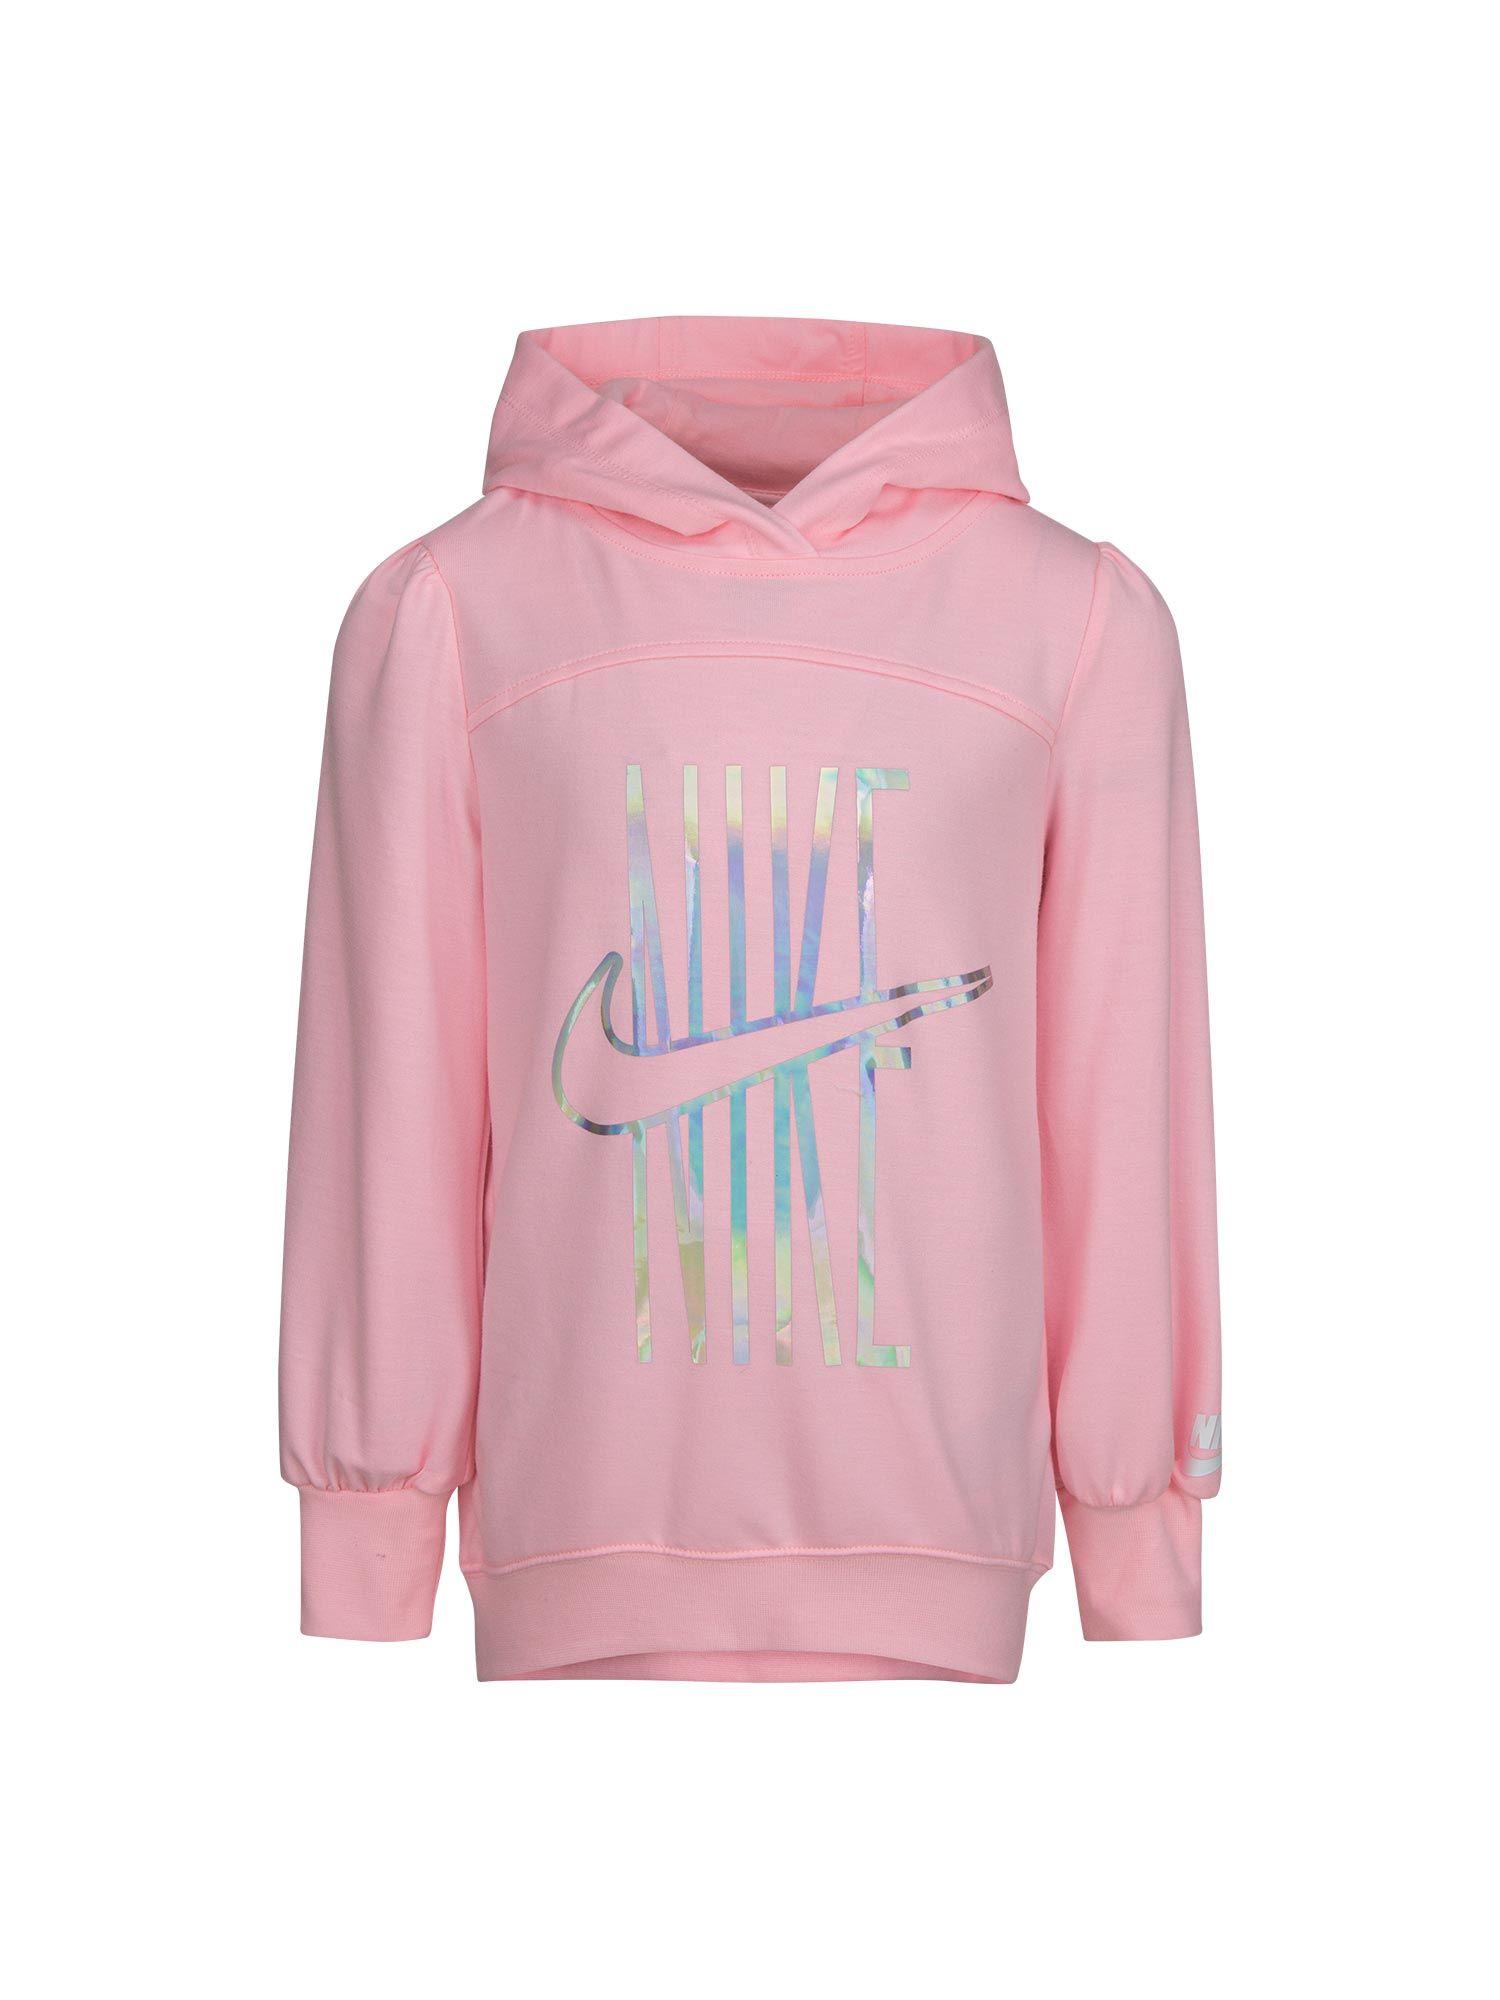 girls pink hoodie